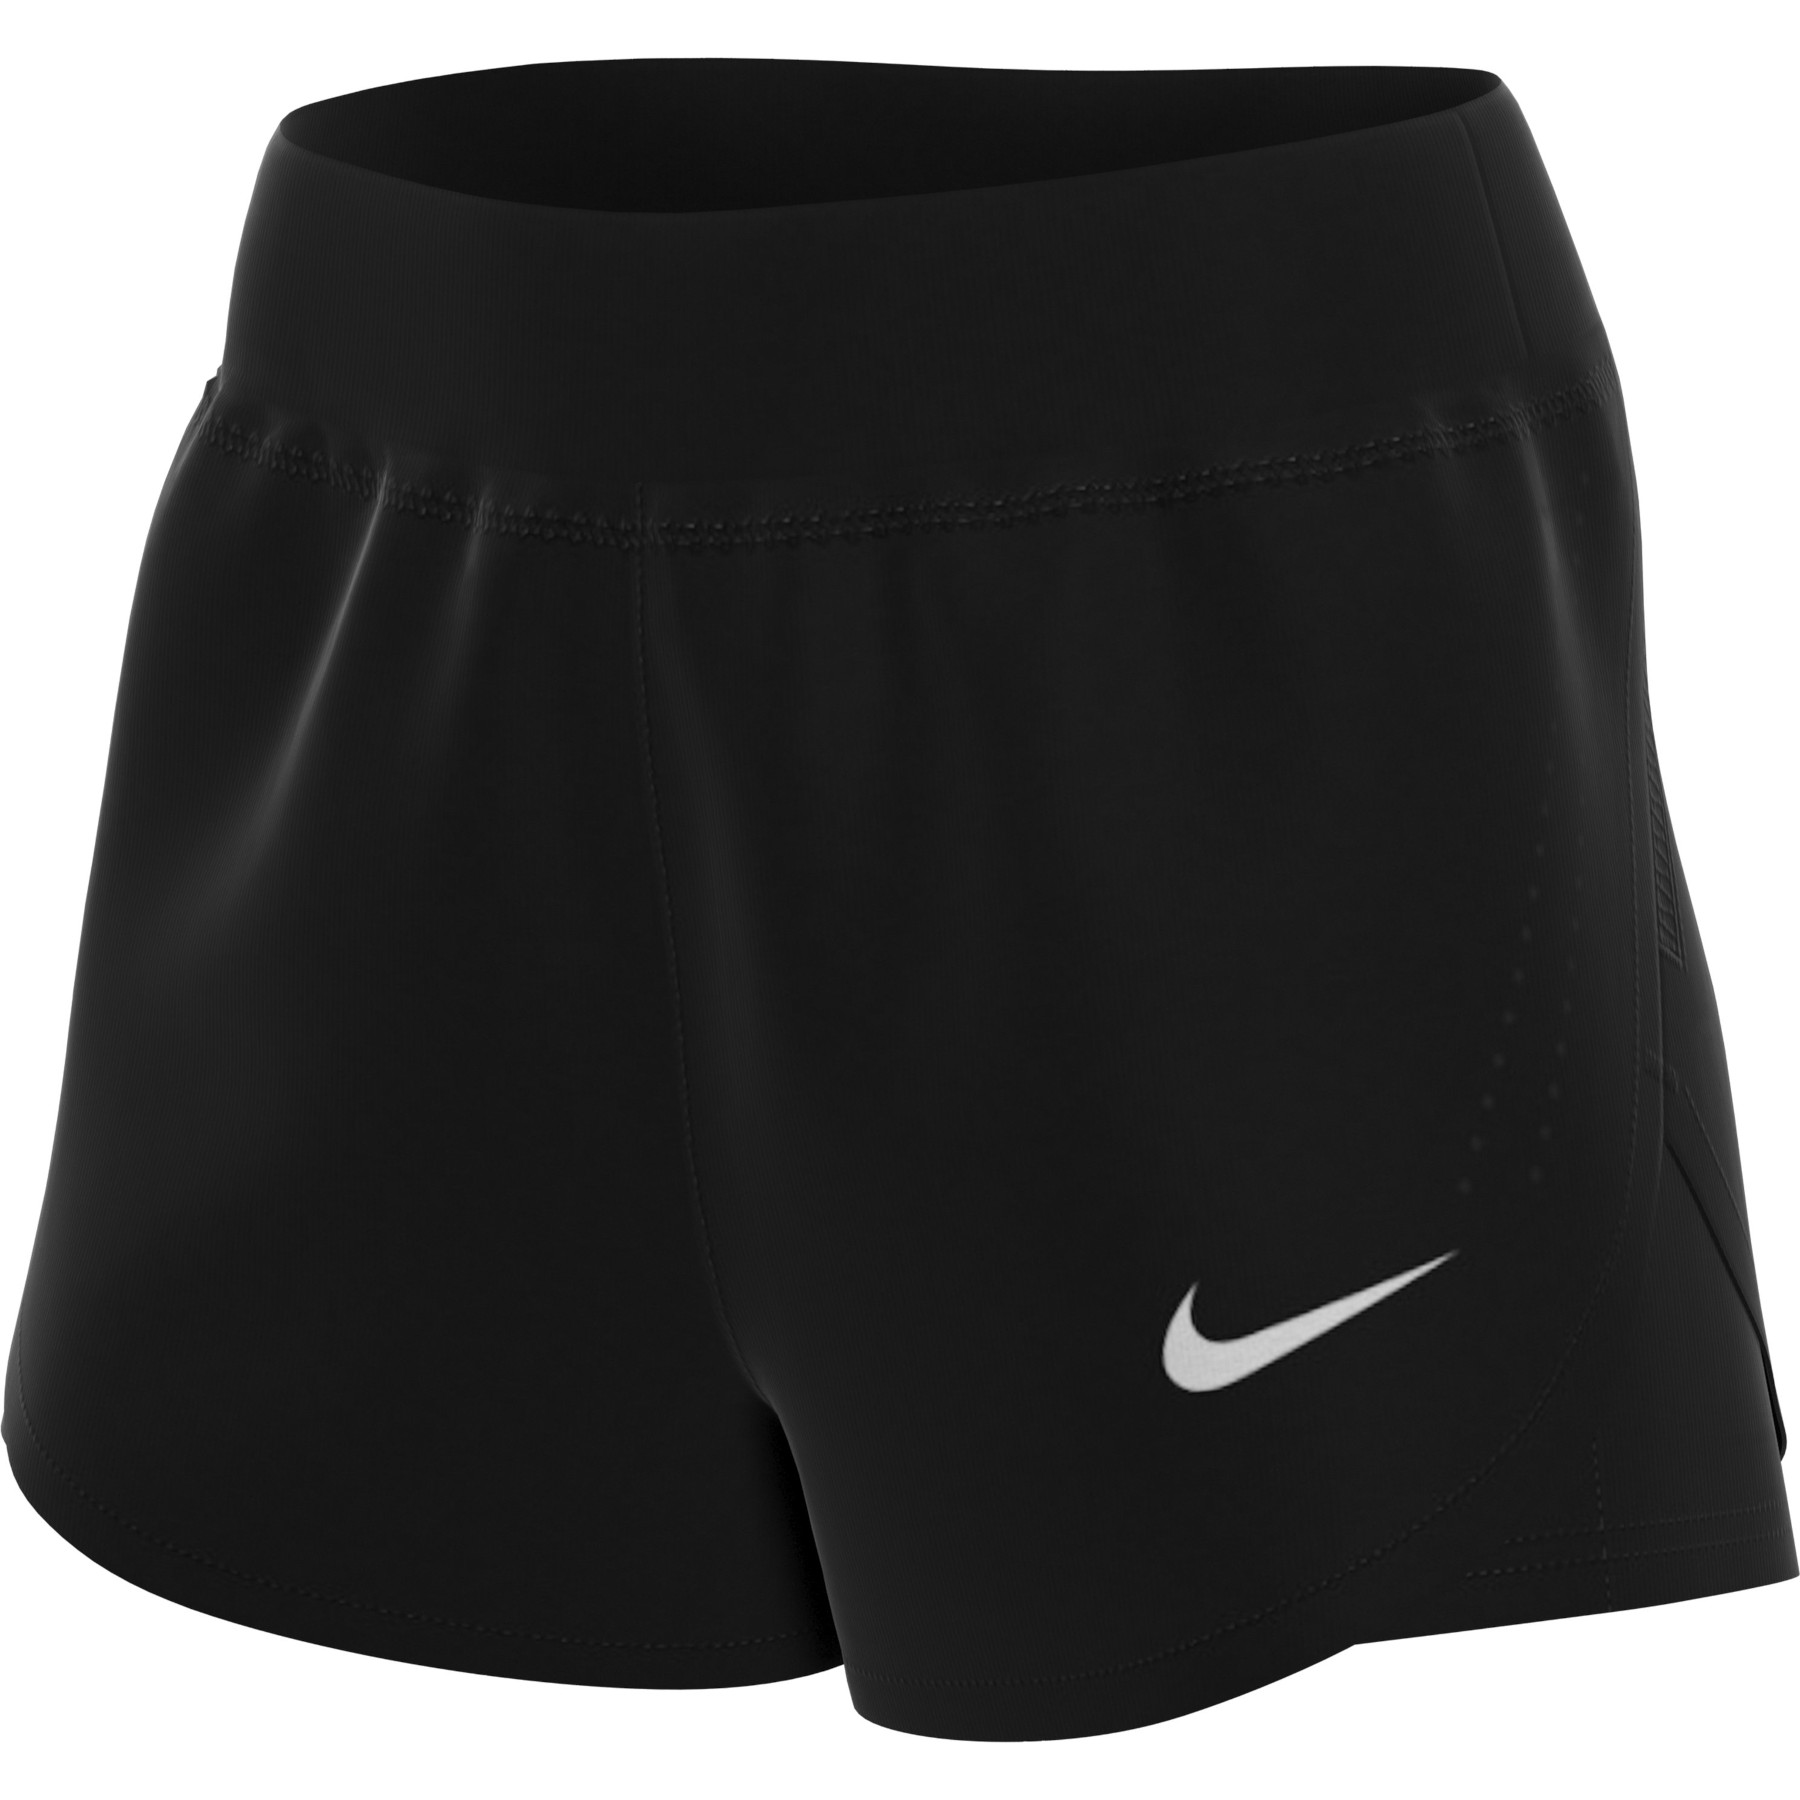 Bild von Nike Eclipse 2-In-1 Damen-Laufshorts - black/reflective silver CZ9570-010